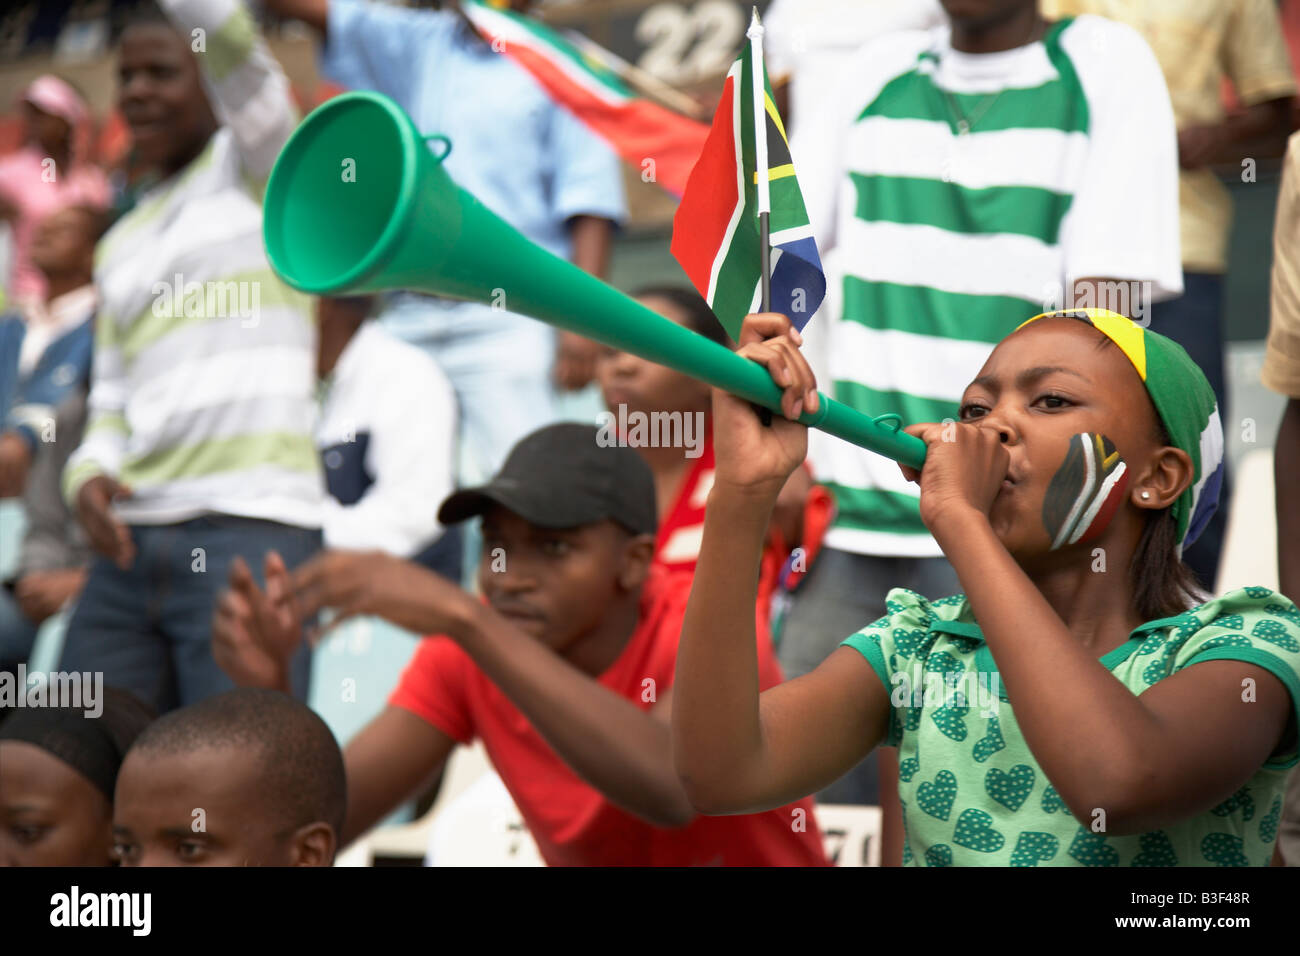 13MA-054 © Monkeyapple aFRIKA Sammlung großer Lager!  Fußball-Fan mit bemaltem Gesicht am Fußballspiel, eine Vuvuzela bläst Stockfoto